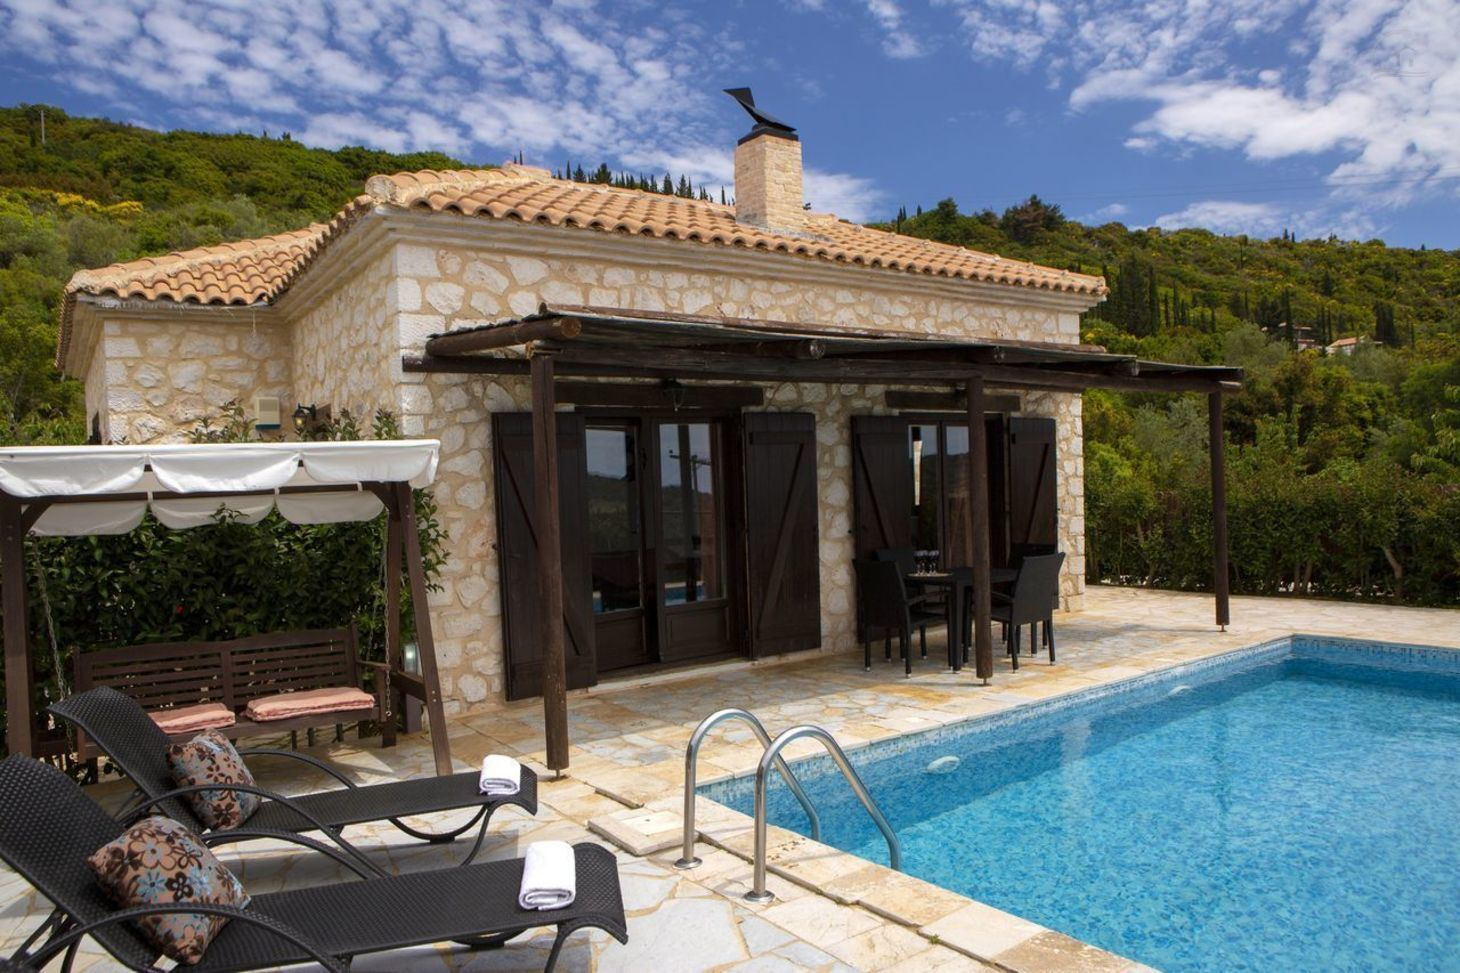 Ferienhaus mit Privatpool für 2 Personen  + 2 Ferienhaus in Griechenland